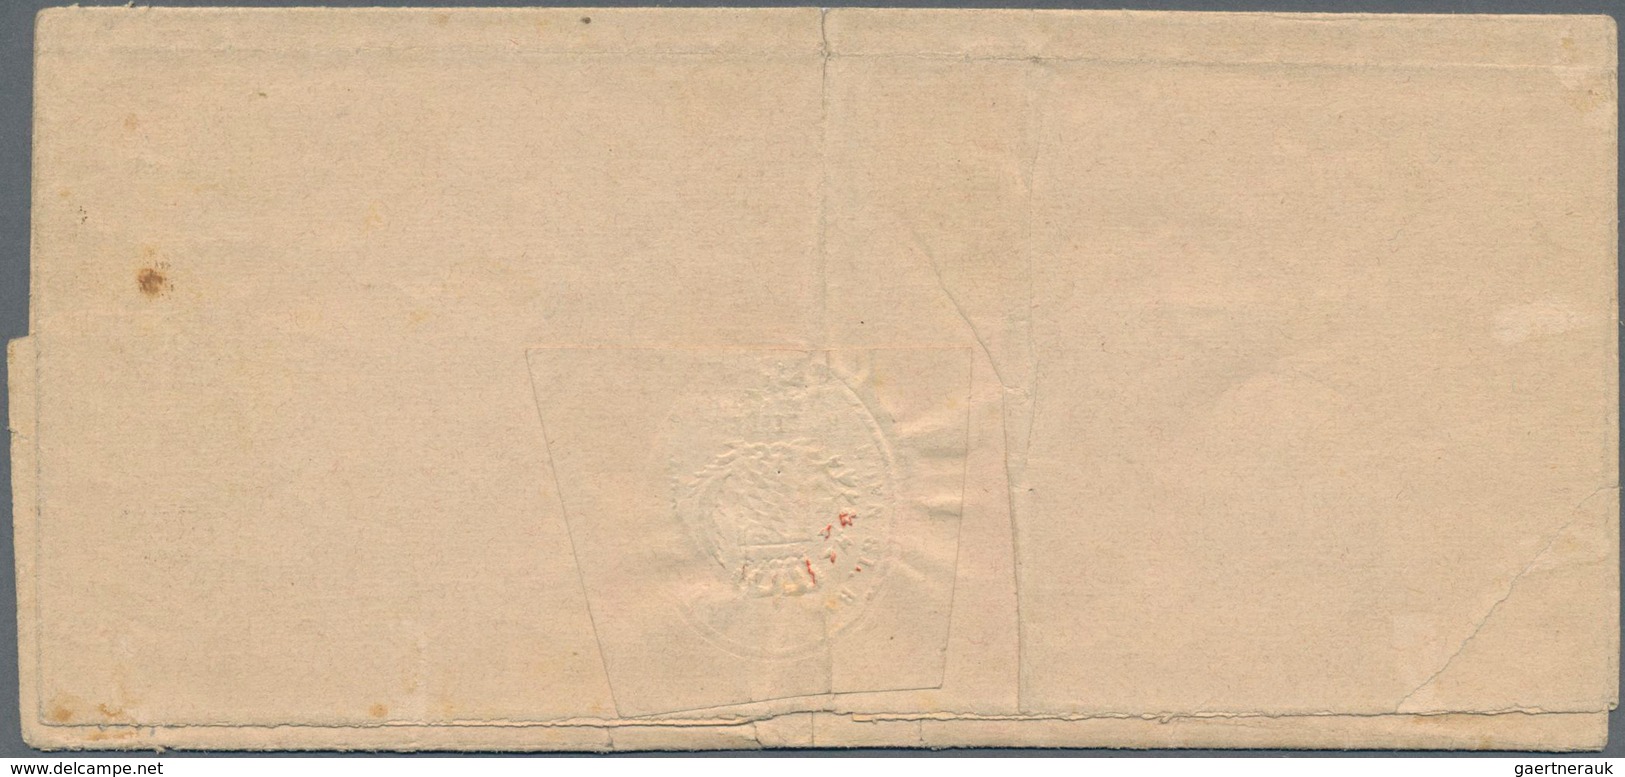 Bayern - Portomarken: 1862 Portomarke 3 Kr. Geschnitten Auf Brief Mit Sehr Seltenem K1 "ROTTHALMÜNST - Other & Unclassified